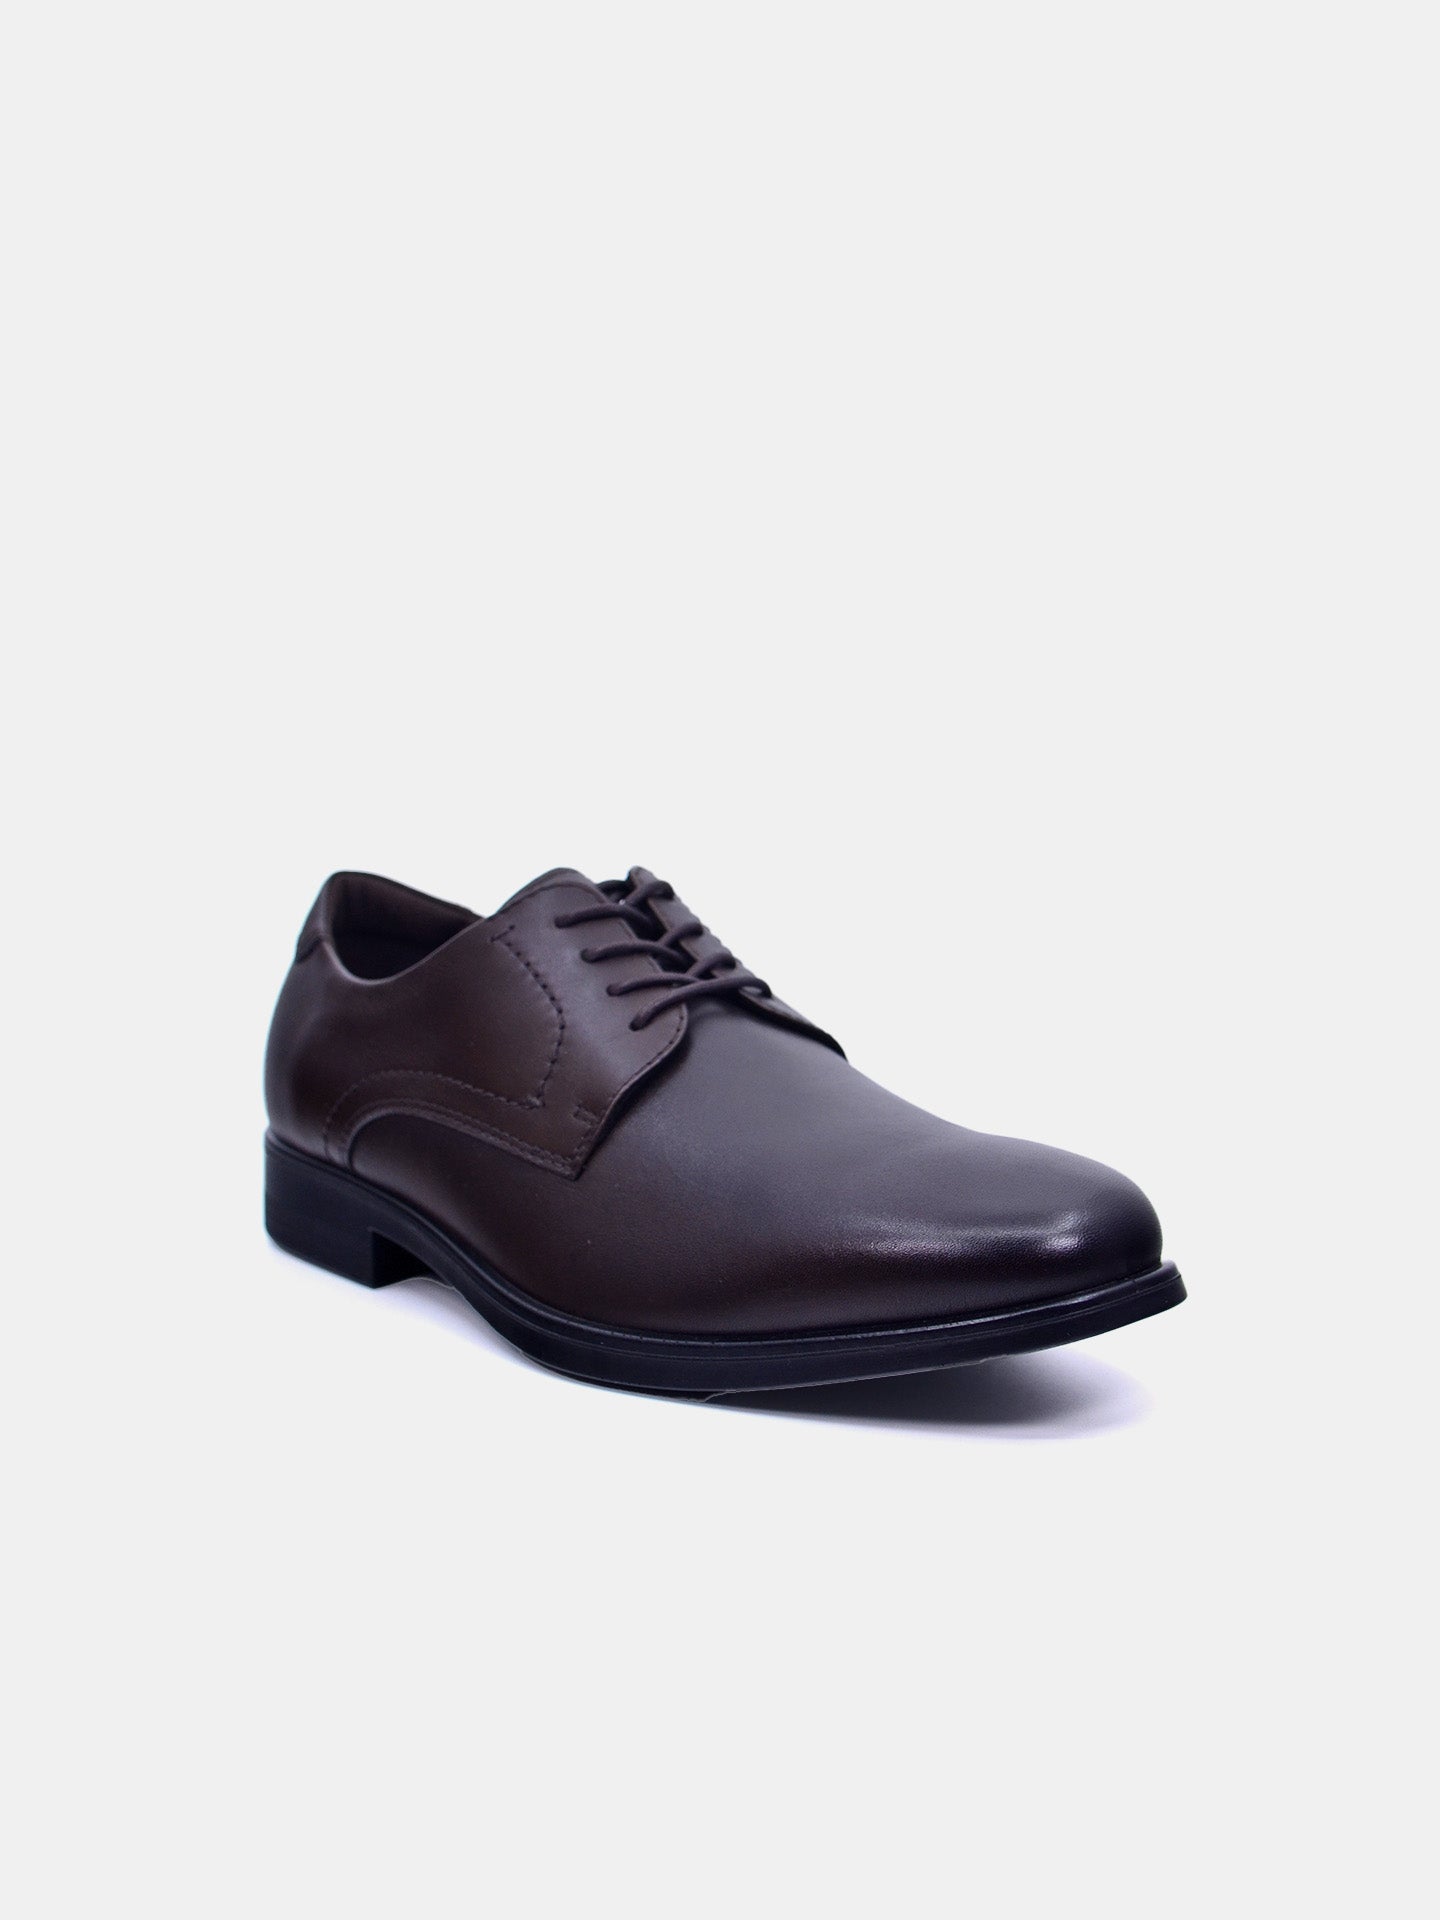 Josef Seibel M756 Men's Formal Shoes #color_Brown